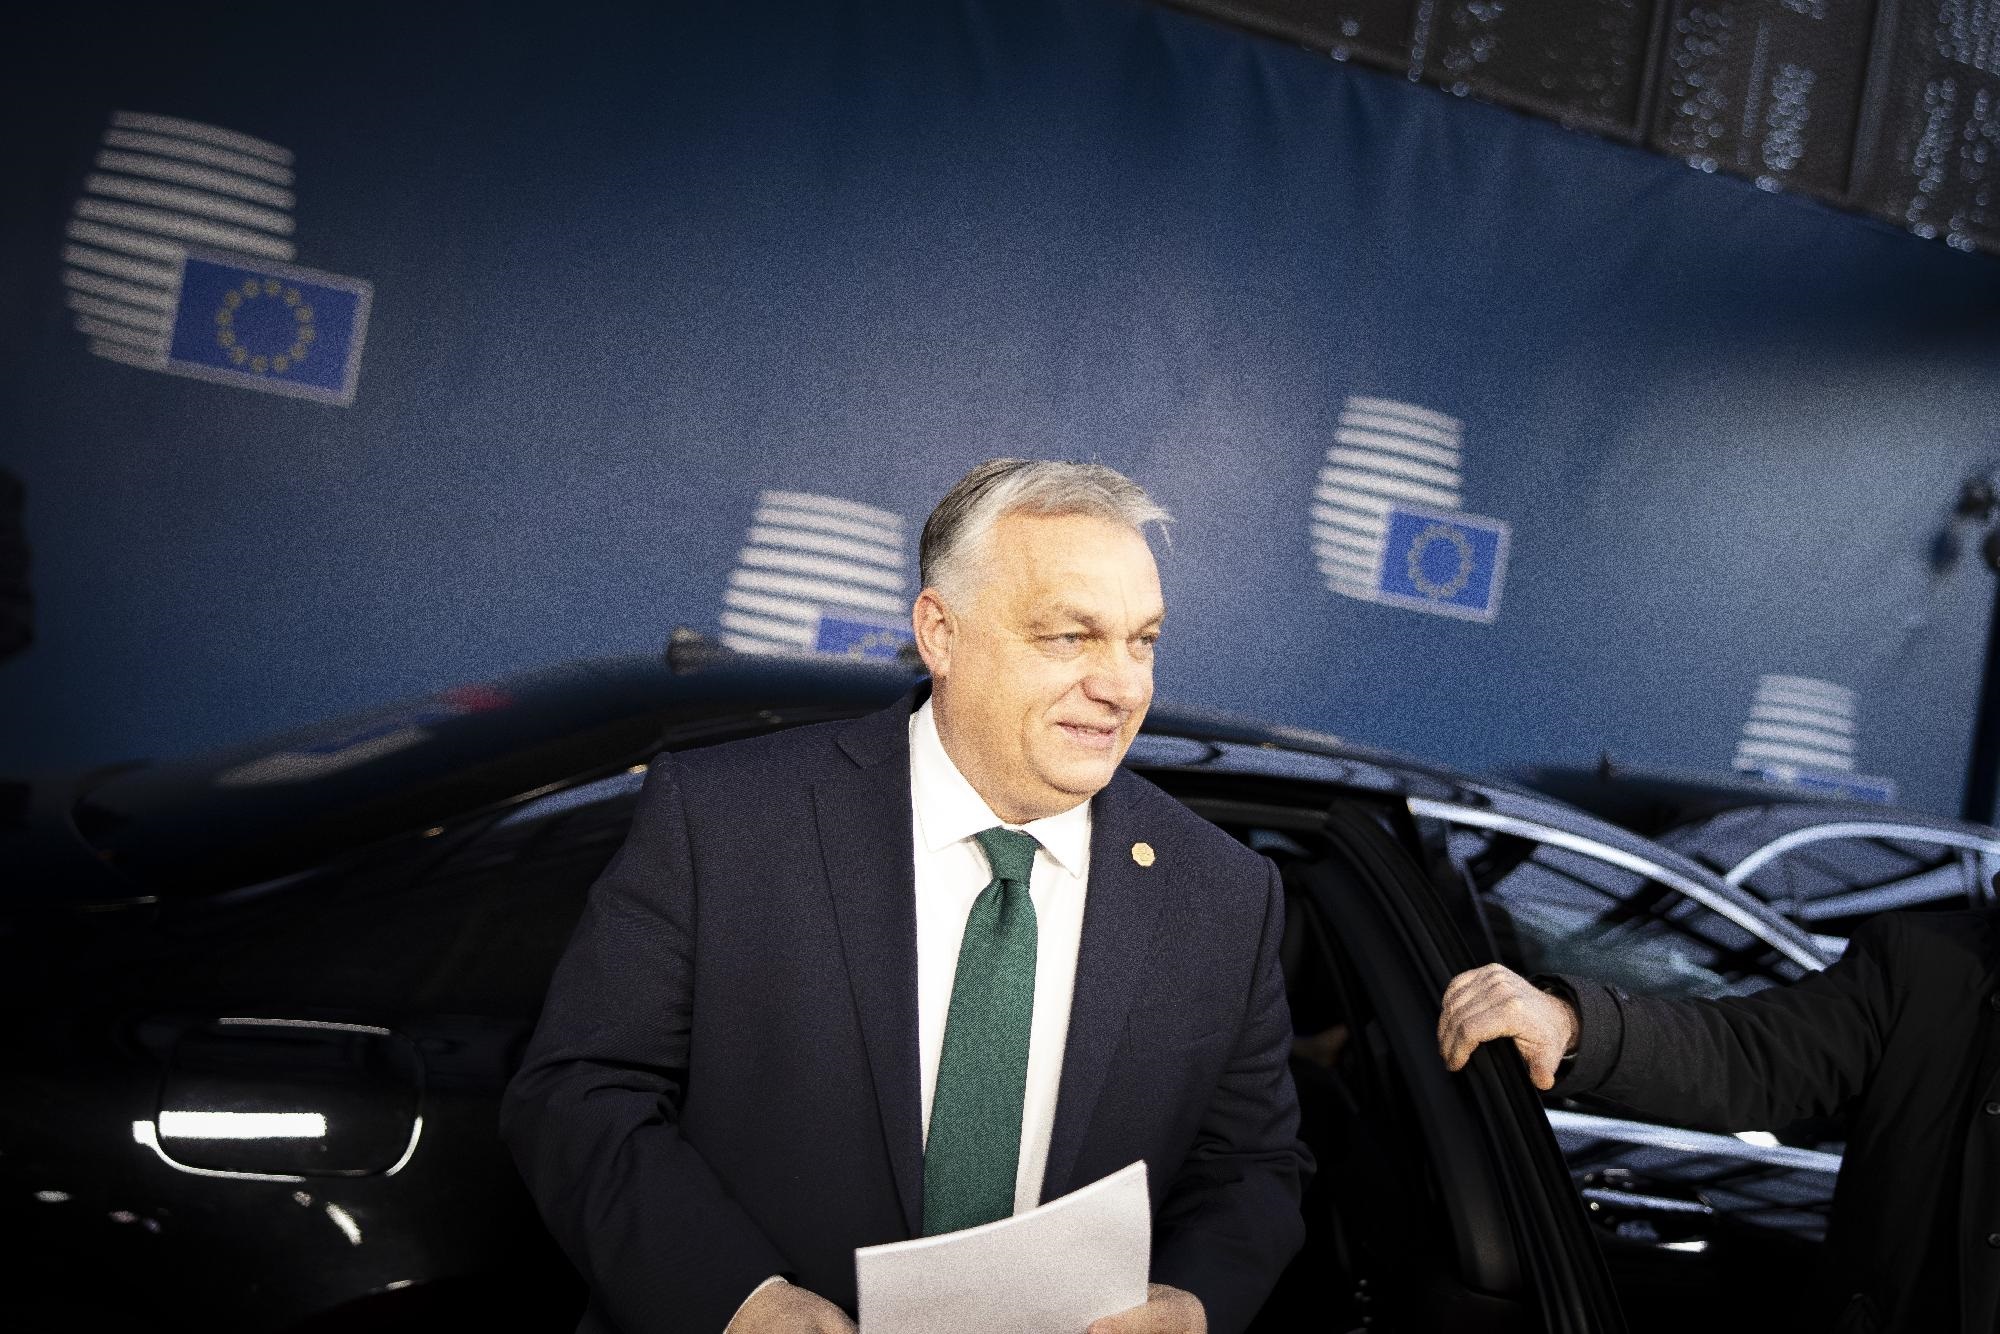 Erős nemzeti felhatalmazással érkezik az EU-csúcsra Orbán Viktor